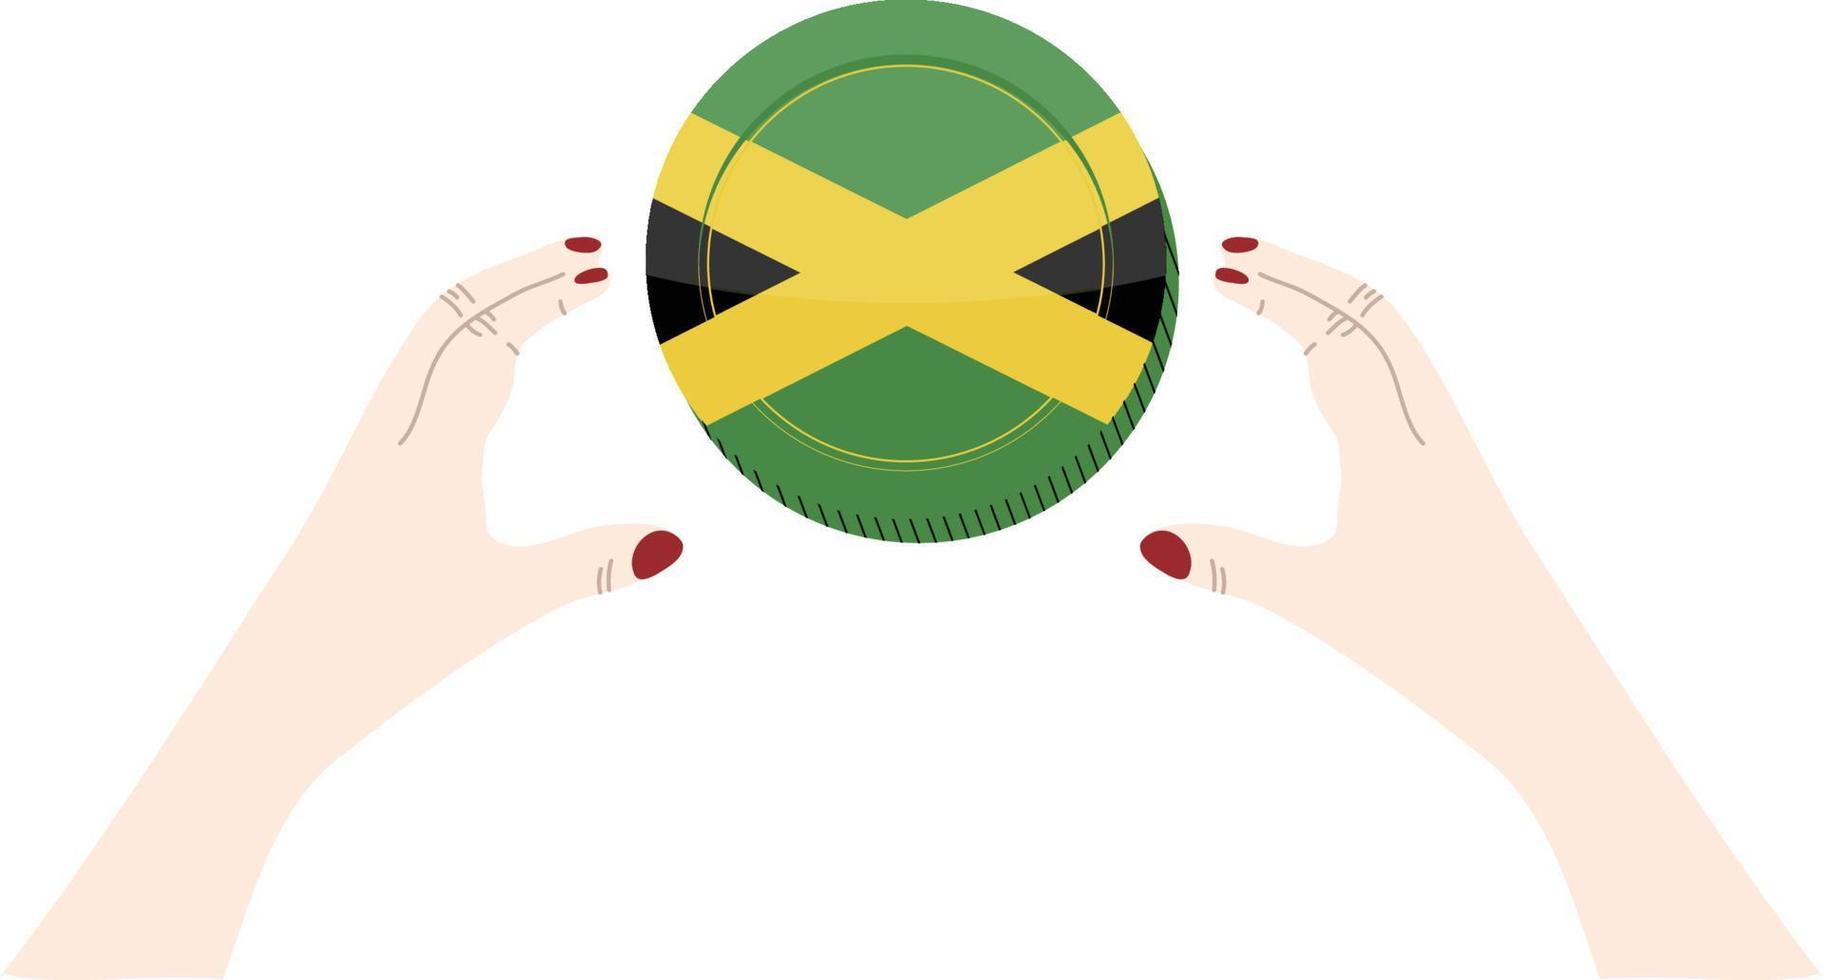 bandeira da jamaicana vetor bandeira desenhada à mão, vetor de dólar jamaicano bandeira desenhada à mão